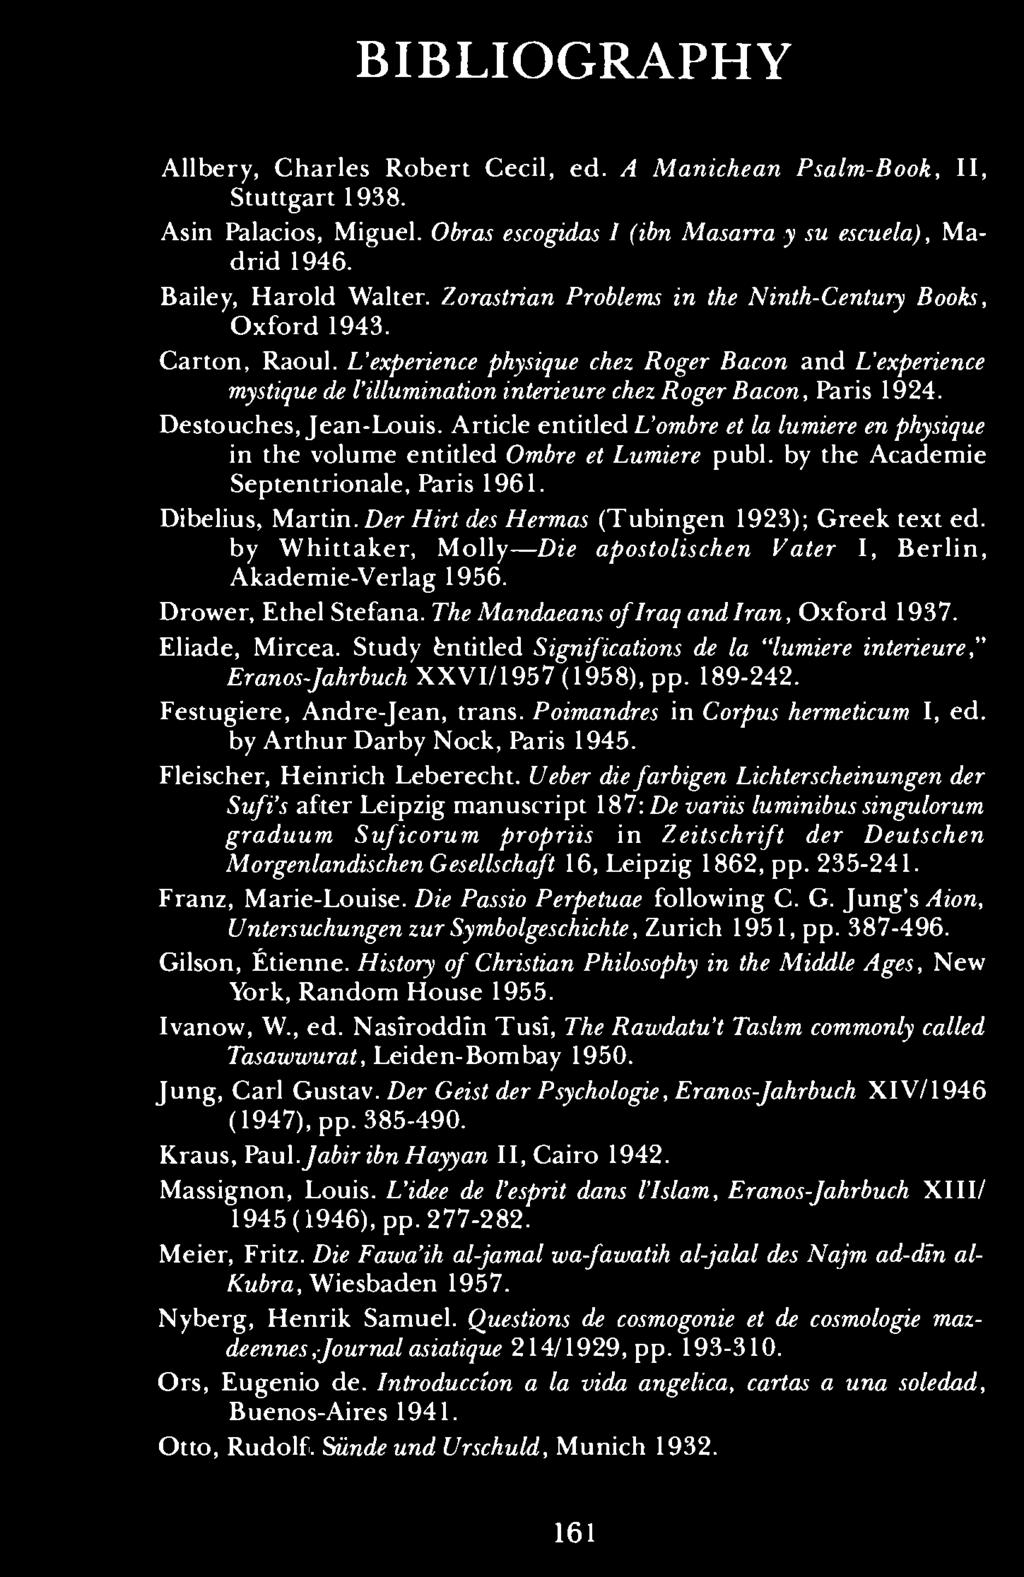 Destouches, Jean-Louis. Article entitled L'ombre et la lumiere en physique in the volume entitled Ombre et Lumiere publ. by the Academie Septentrionale, Paris 1961. Dibelius, Martin.